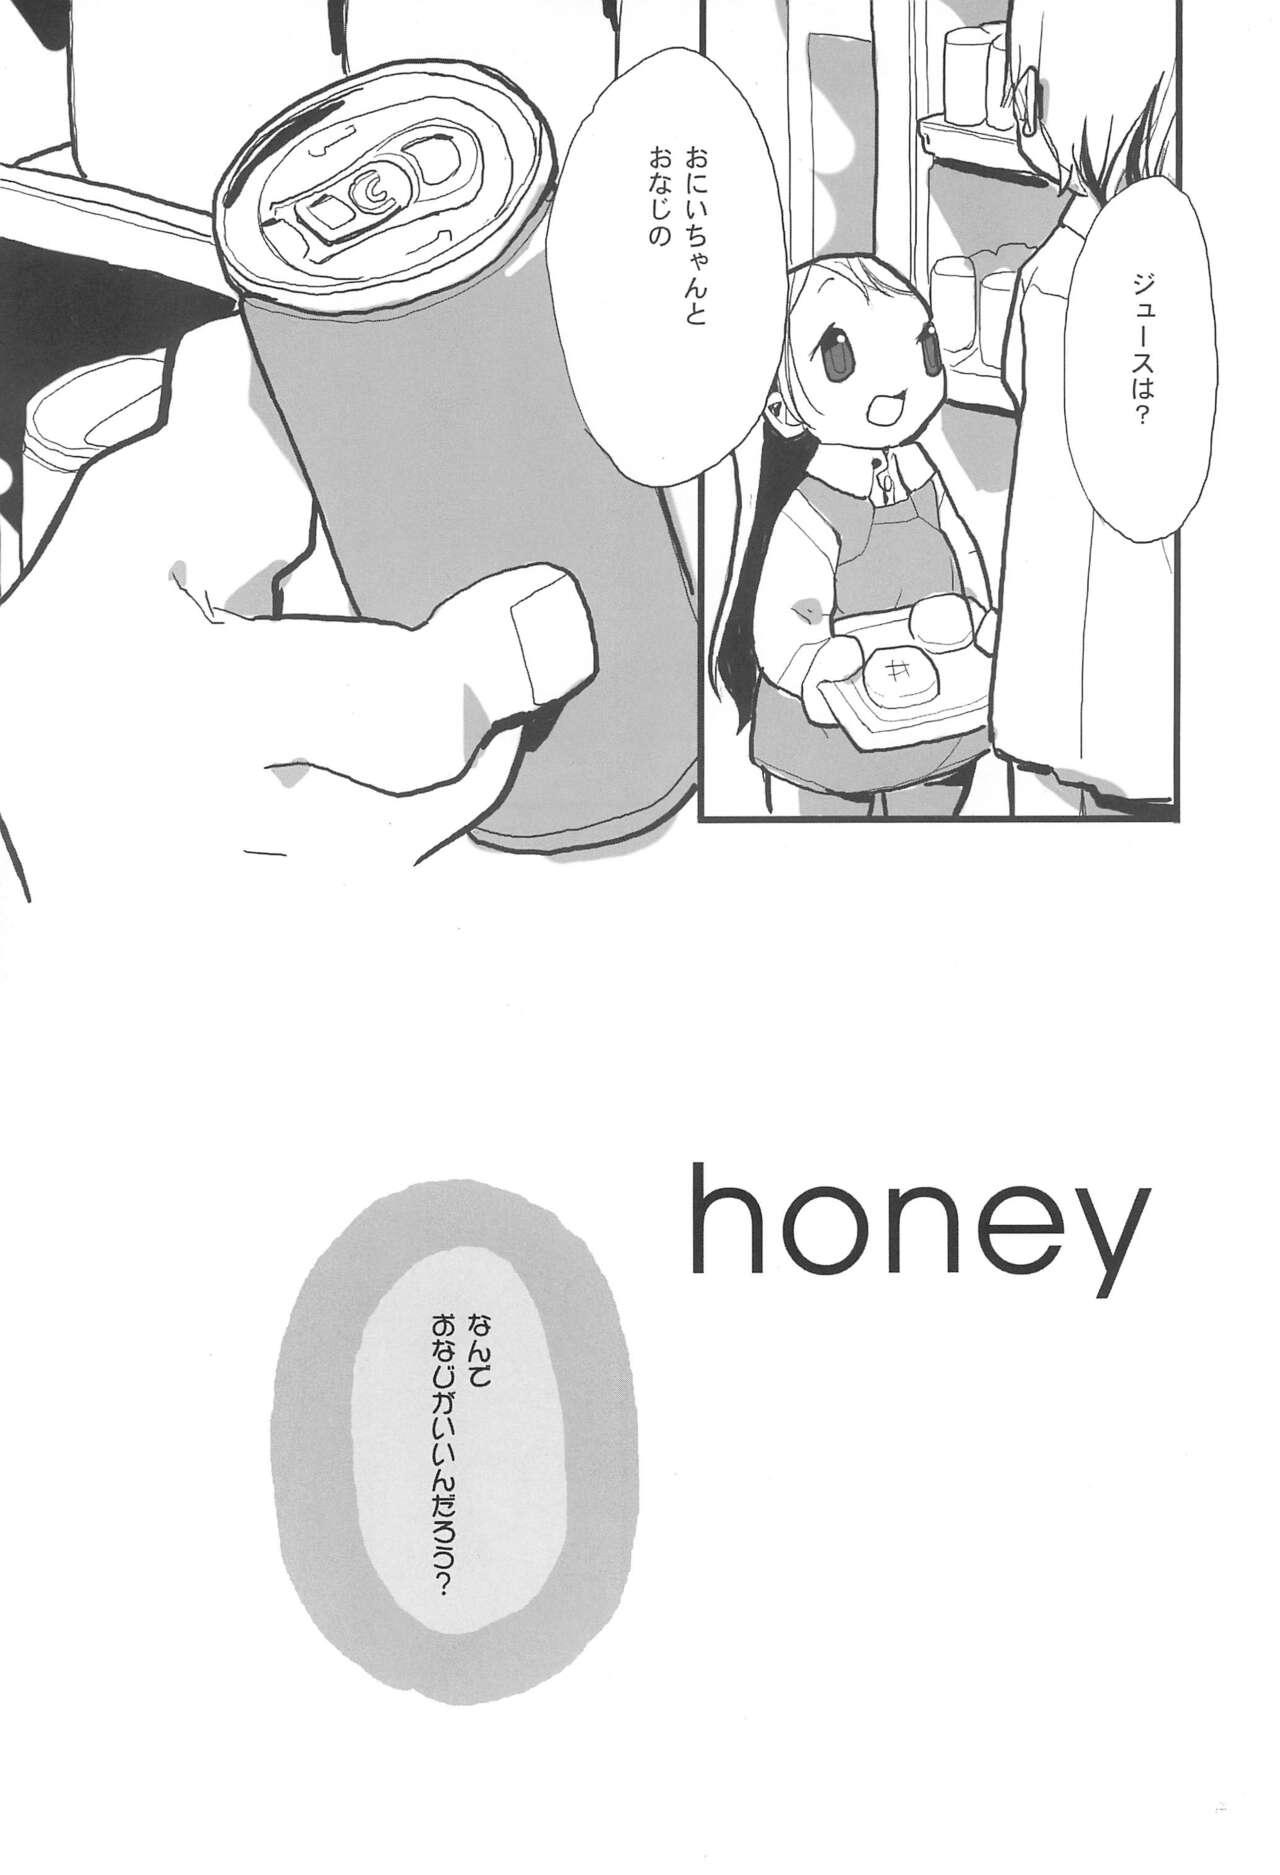 honey 5